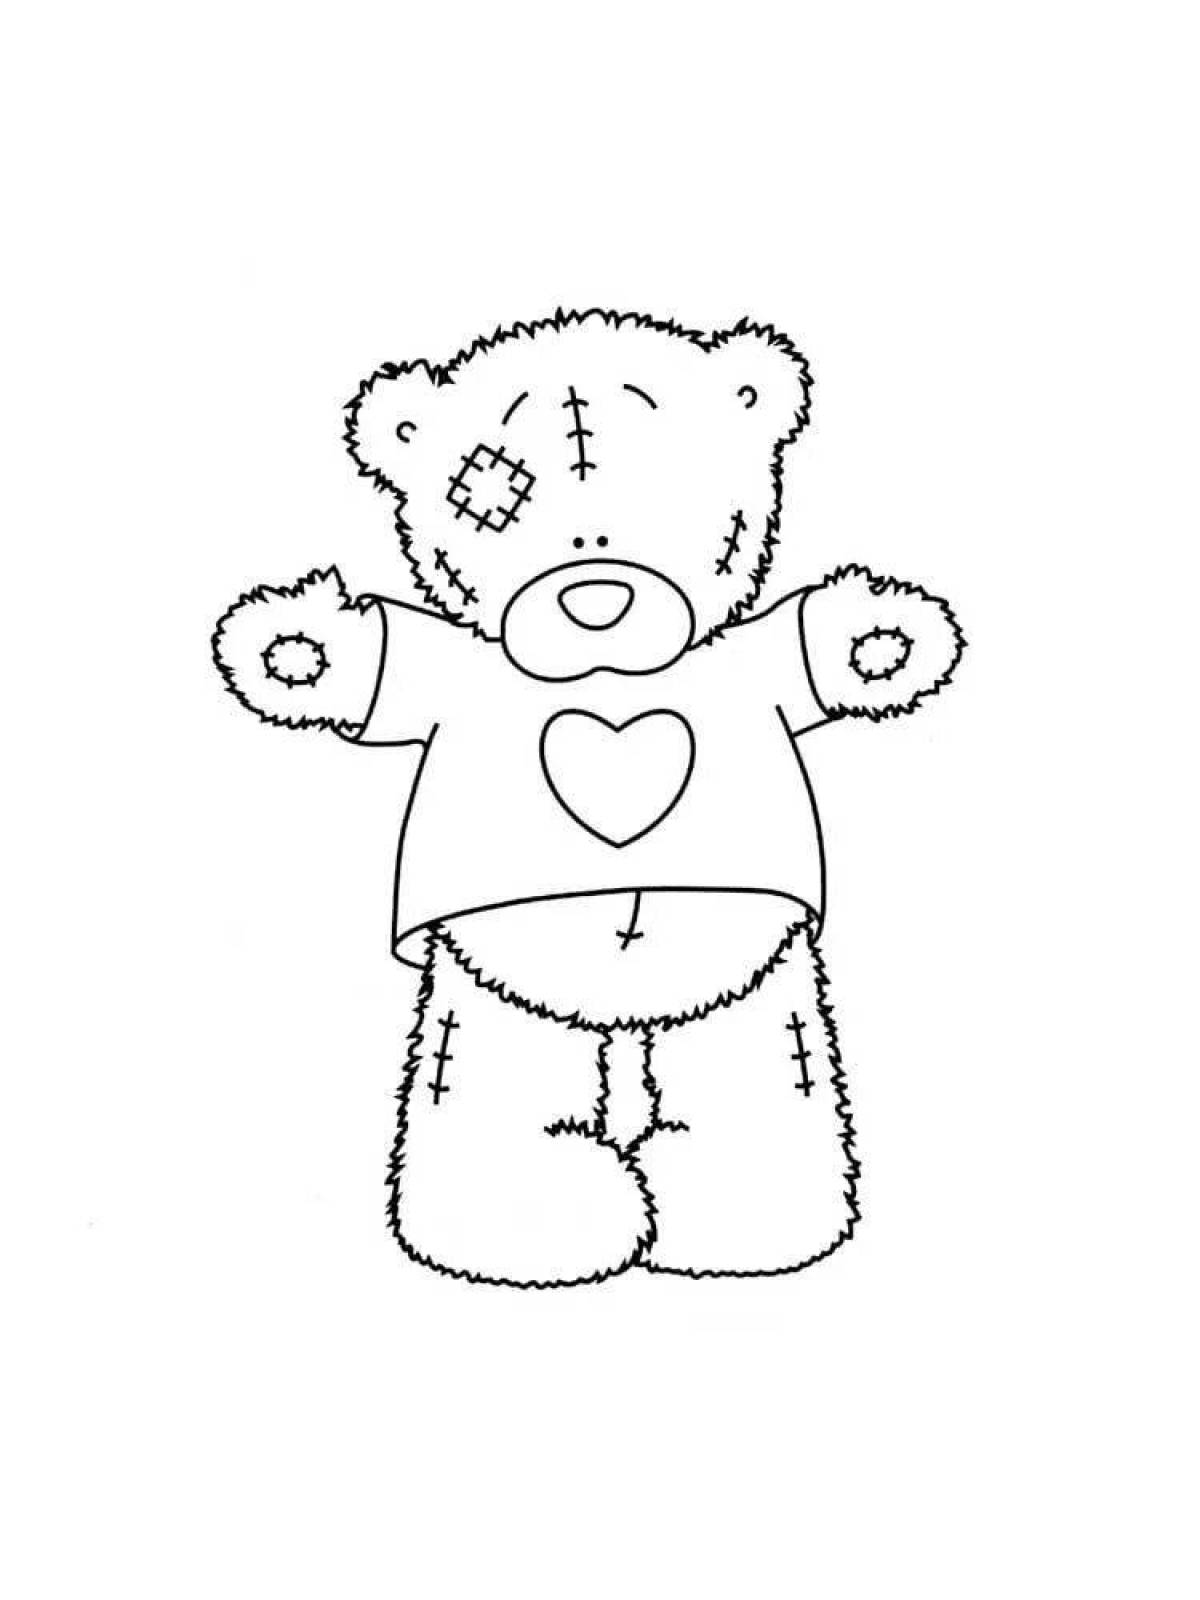 Fancy teddy bear pattern